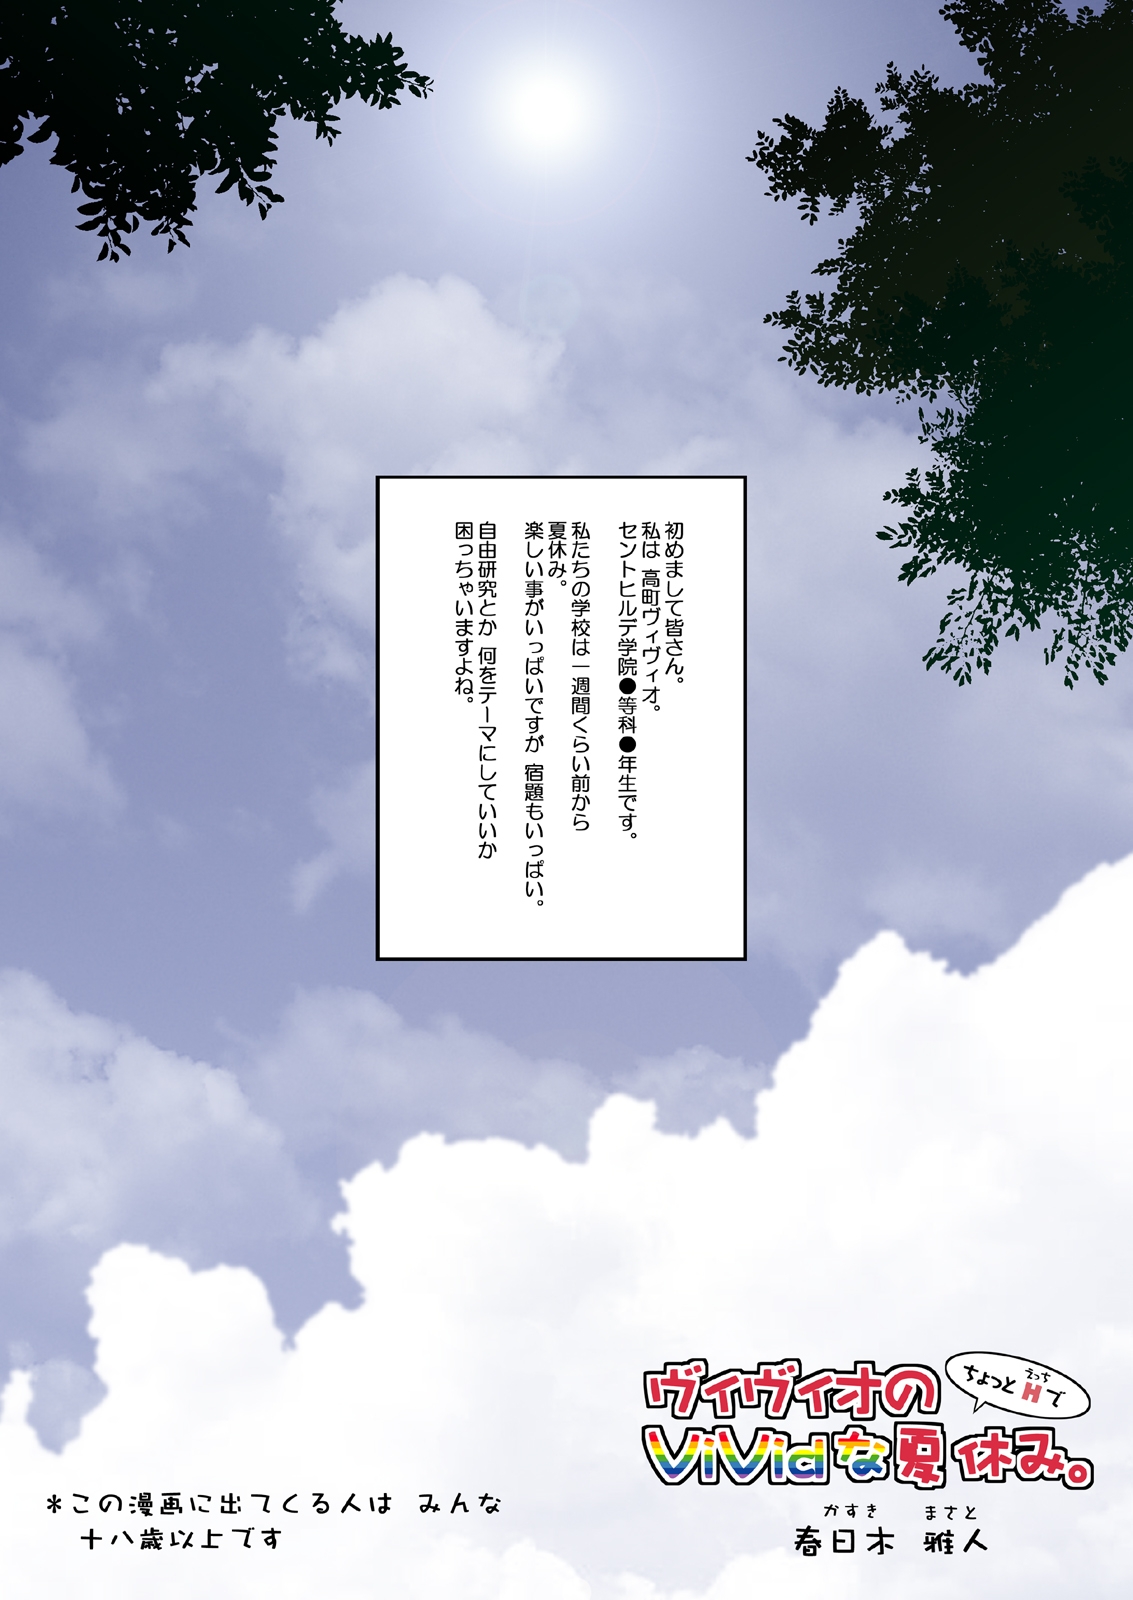 [NextPreview (MIA, Kasuki Masato)] Vivio No Chyotto H De Vivid Na Natuyasumi (Mahou Shoujo Lyrical Nanoha) [Digital] page 3 full